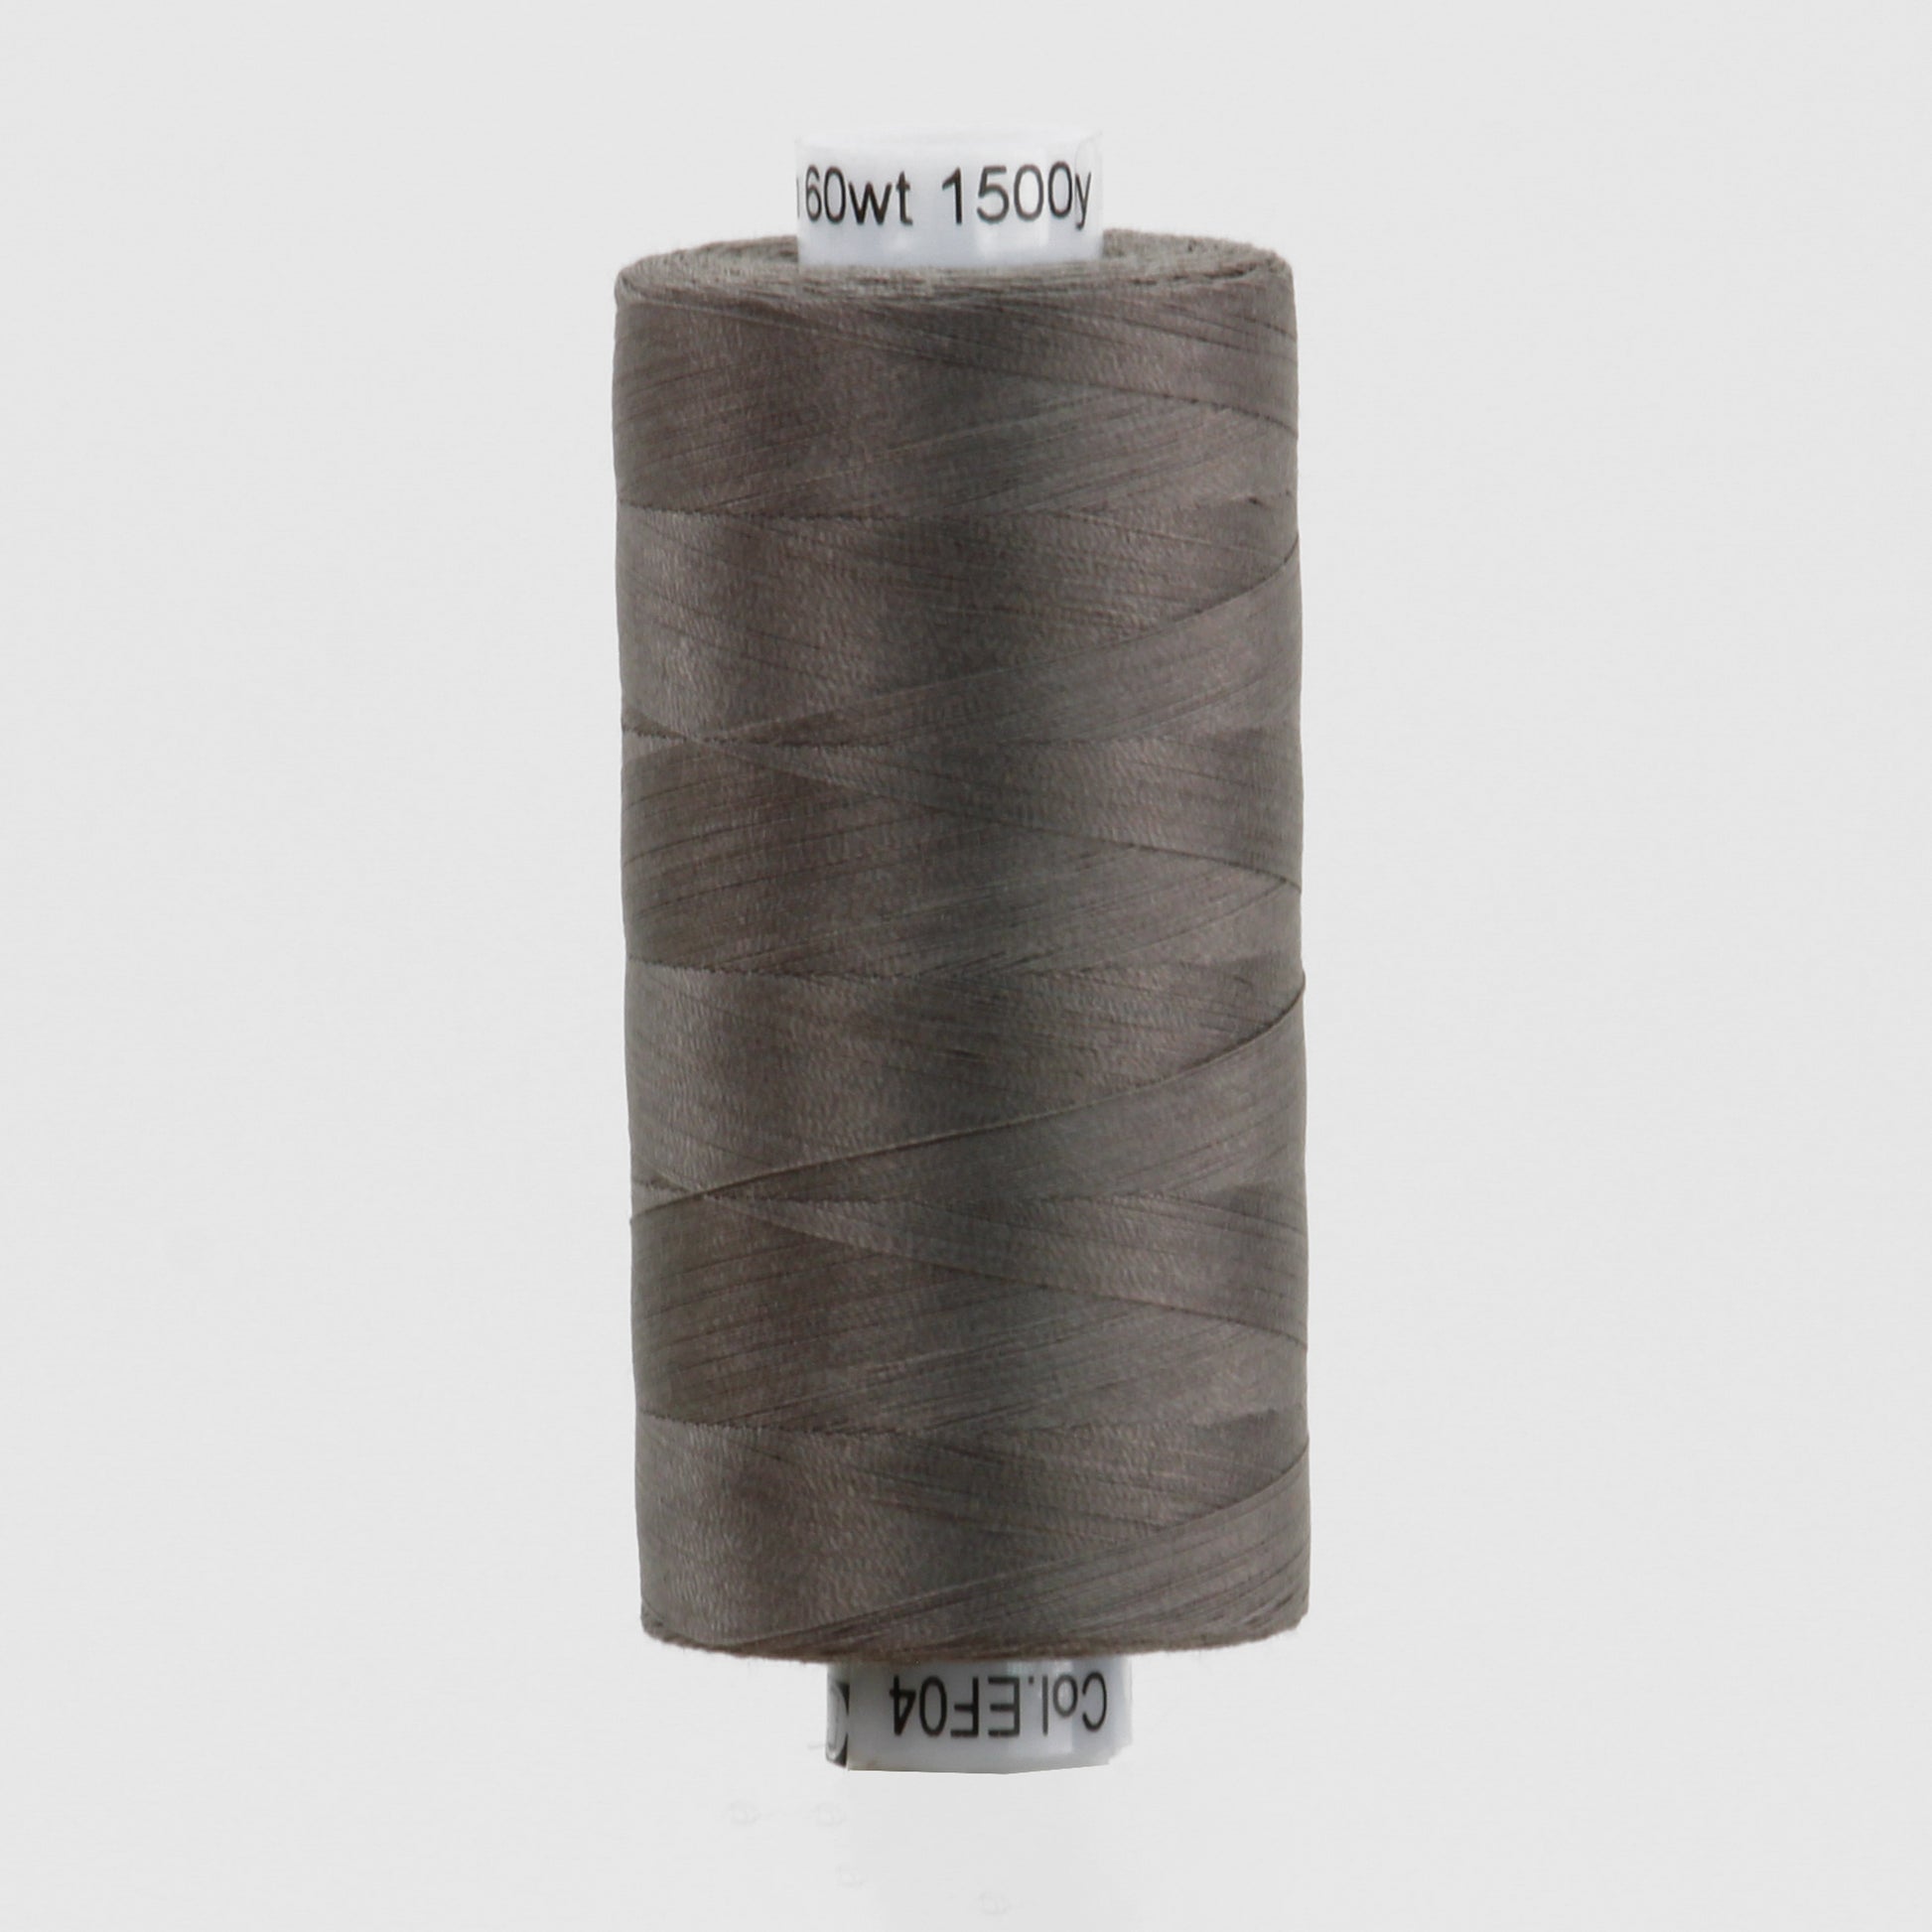 EFS04 - Efina™ 60wt Egyptian Cotton Flannel Thread WonderFil